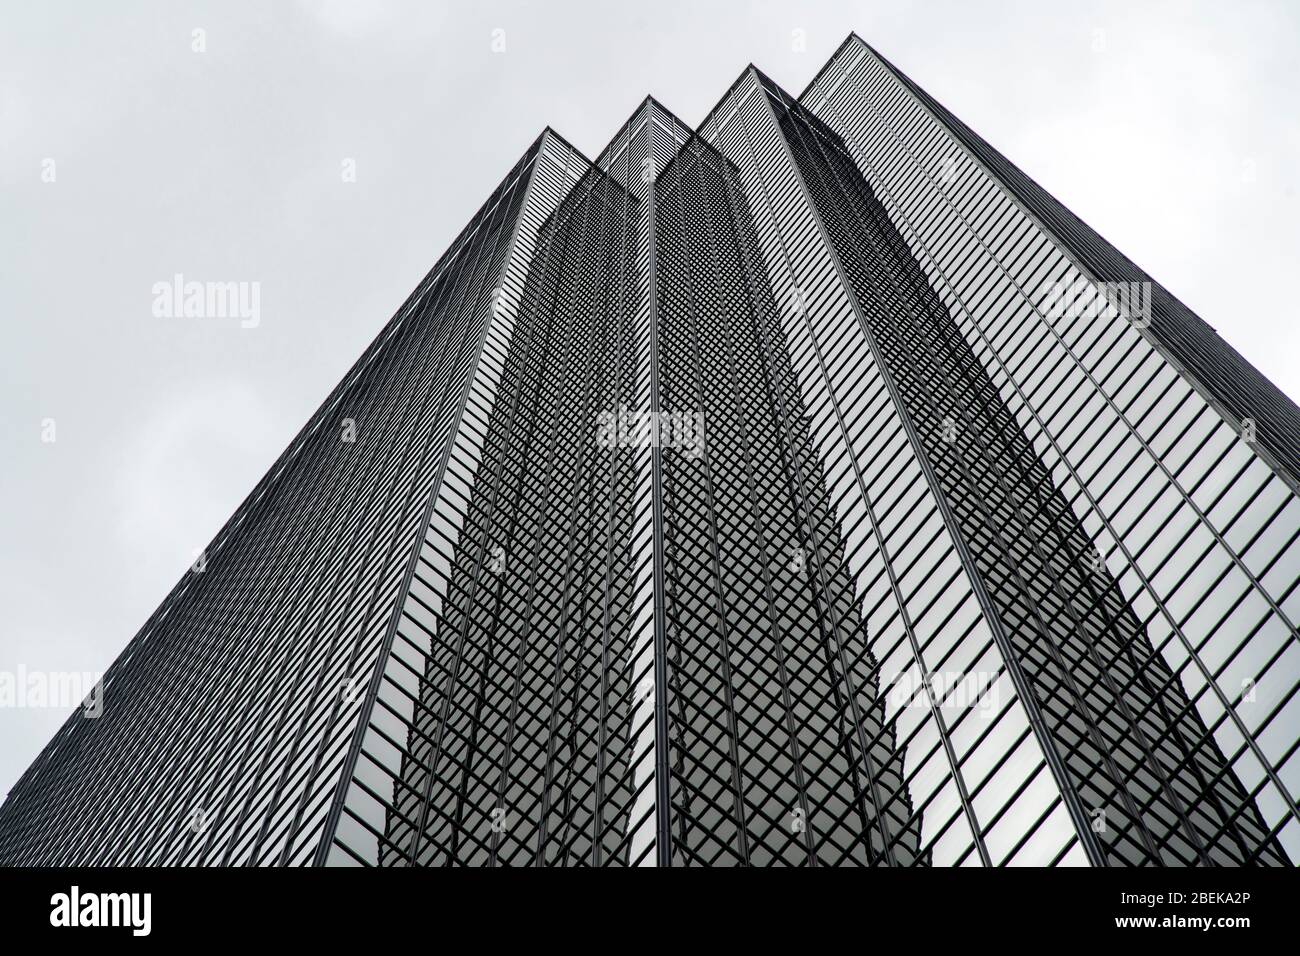 Dallas, Texas, USA. Stadtzentrum. Bank of America Plaza ist ein 72-stöckiges, 280.7 m (921 ft) spätmodernistisches Hochhaus in der Hauptstraße. Stockfoto